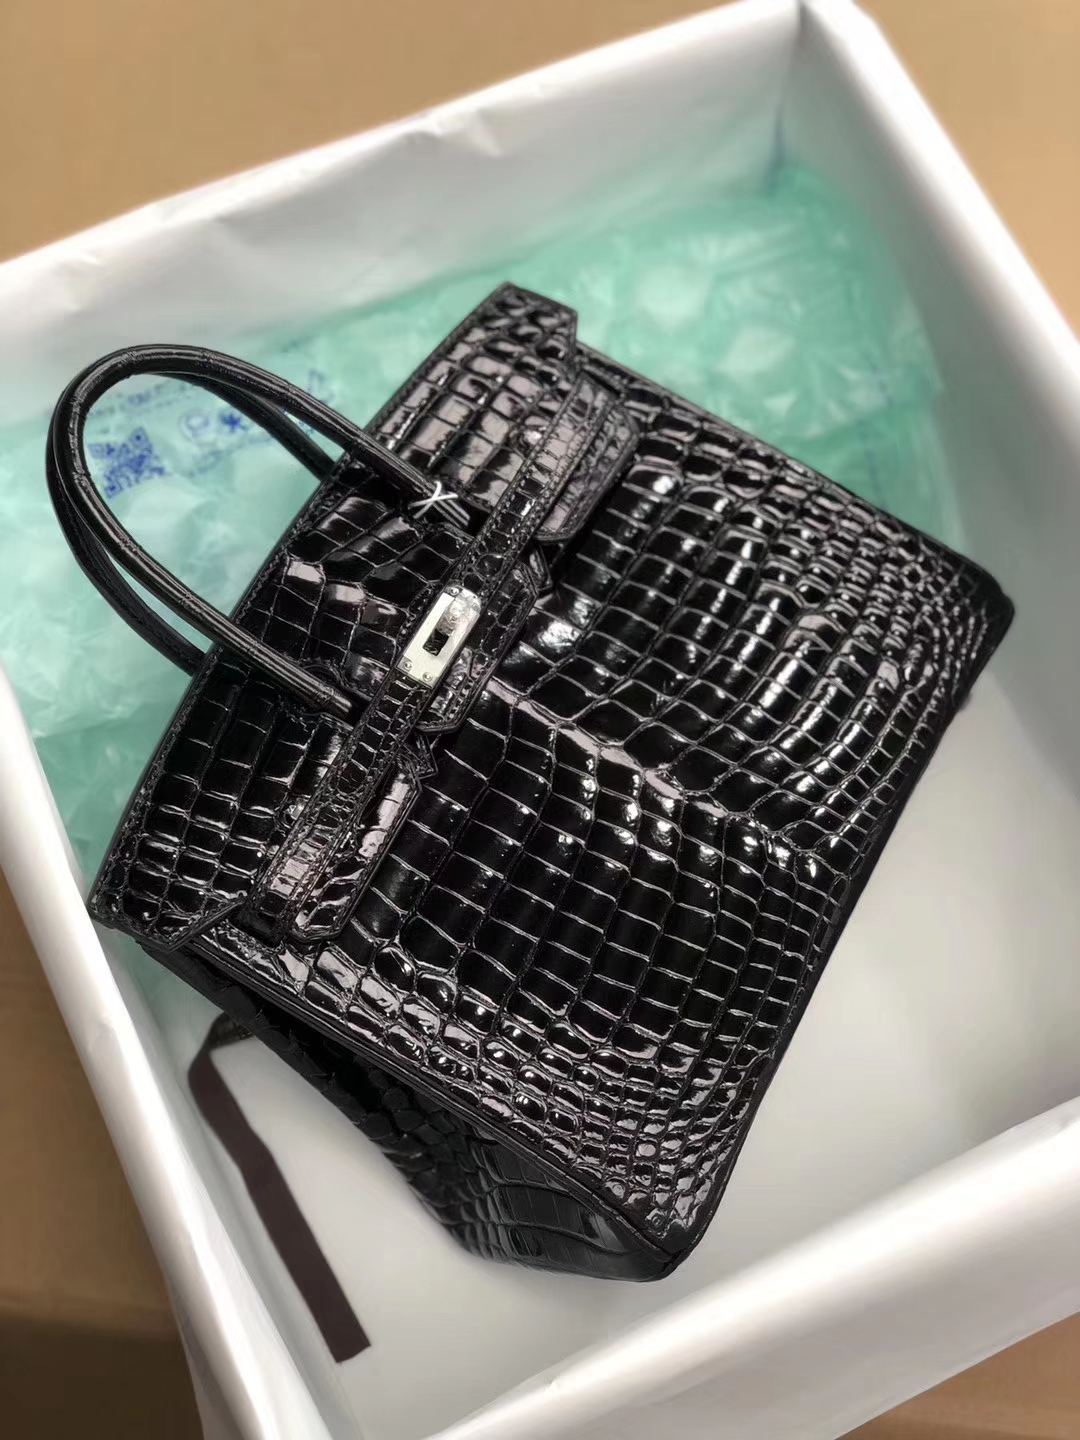 Luxury Hermes Shiny Crocodile Birkin25cm Bag in CK89 Noir Silver Hardware